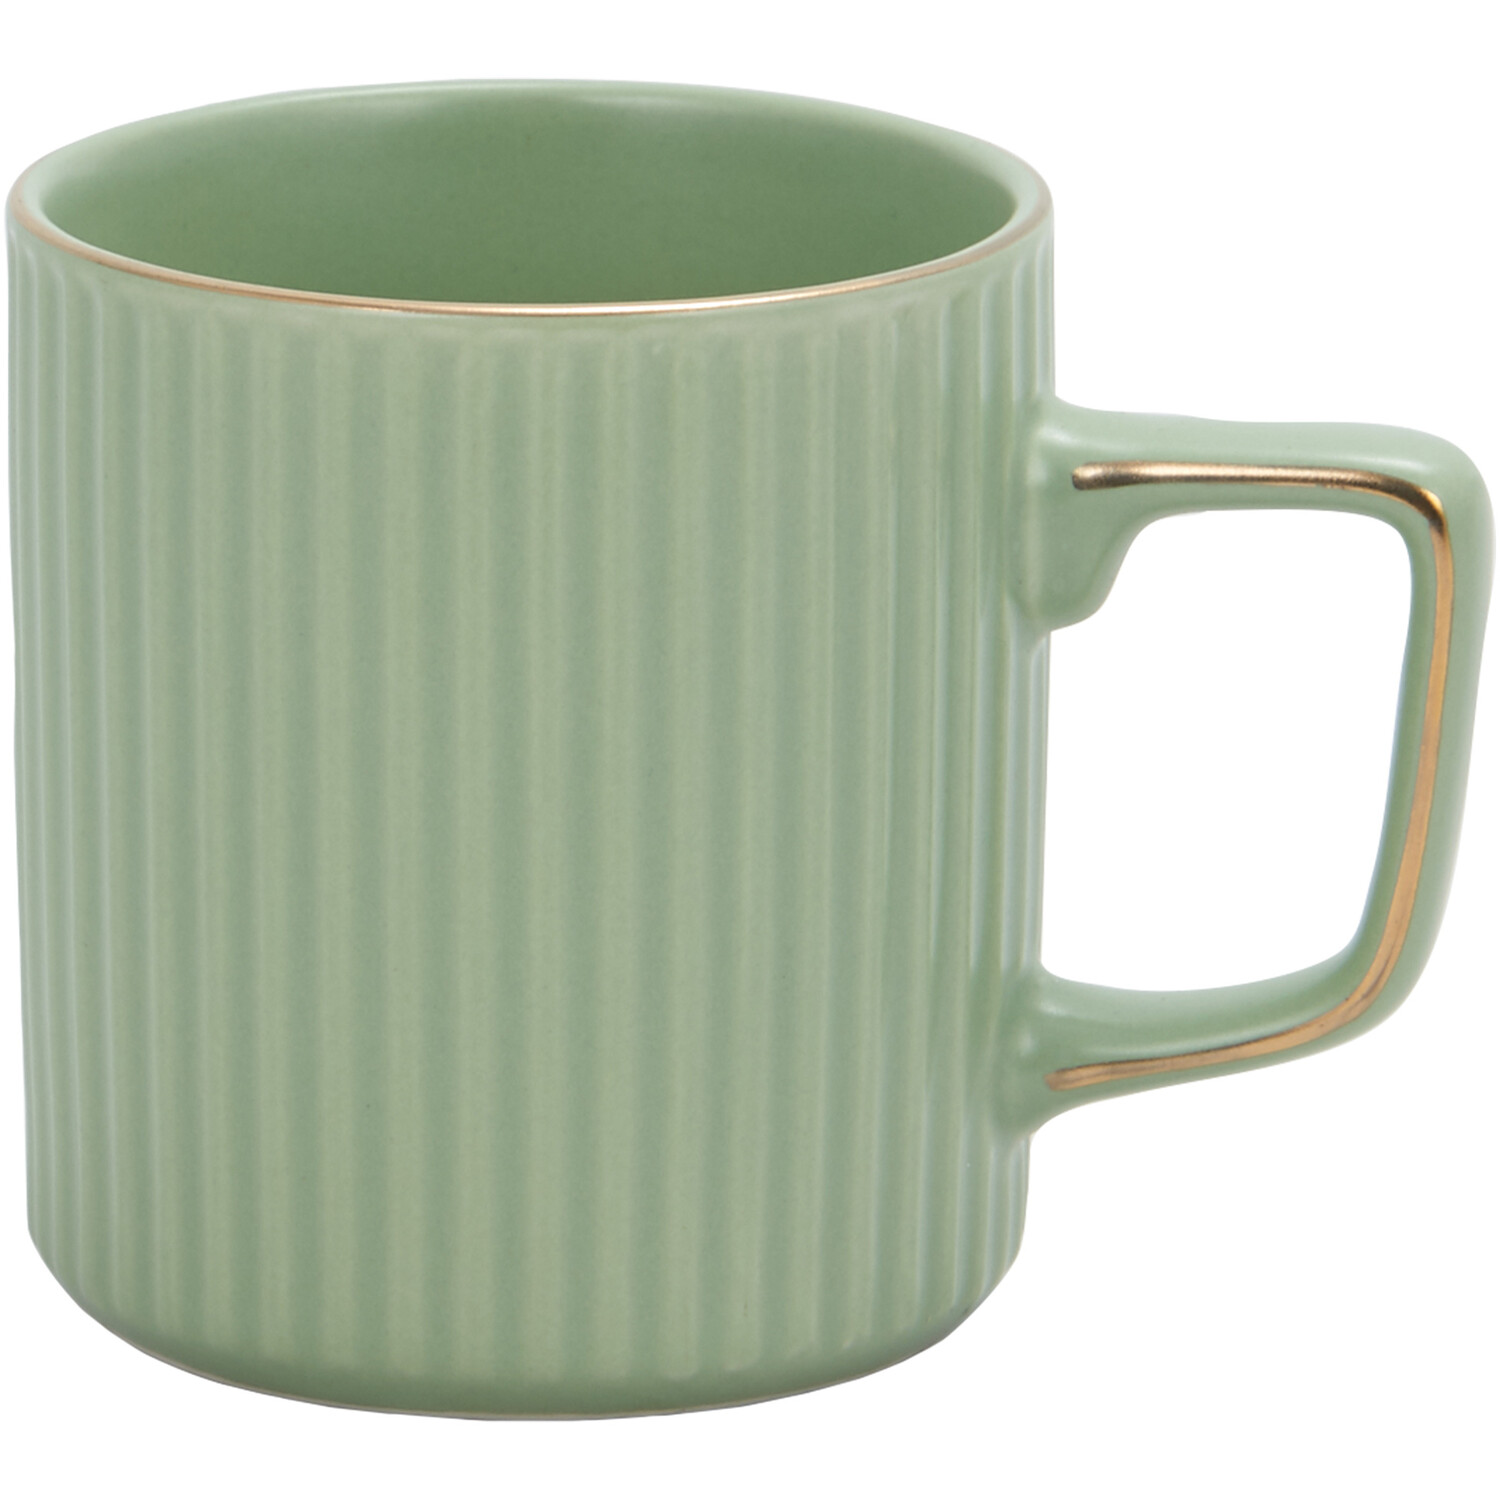 Green & Gold Mug - Green Image 1